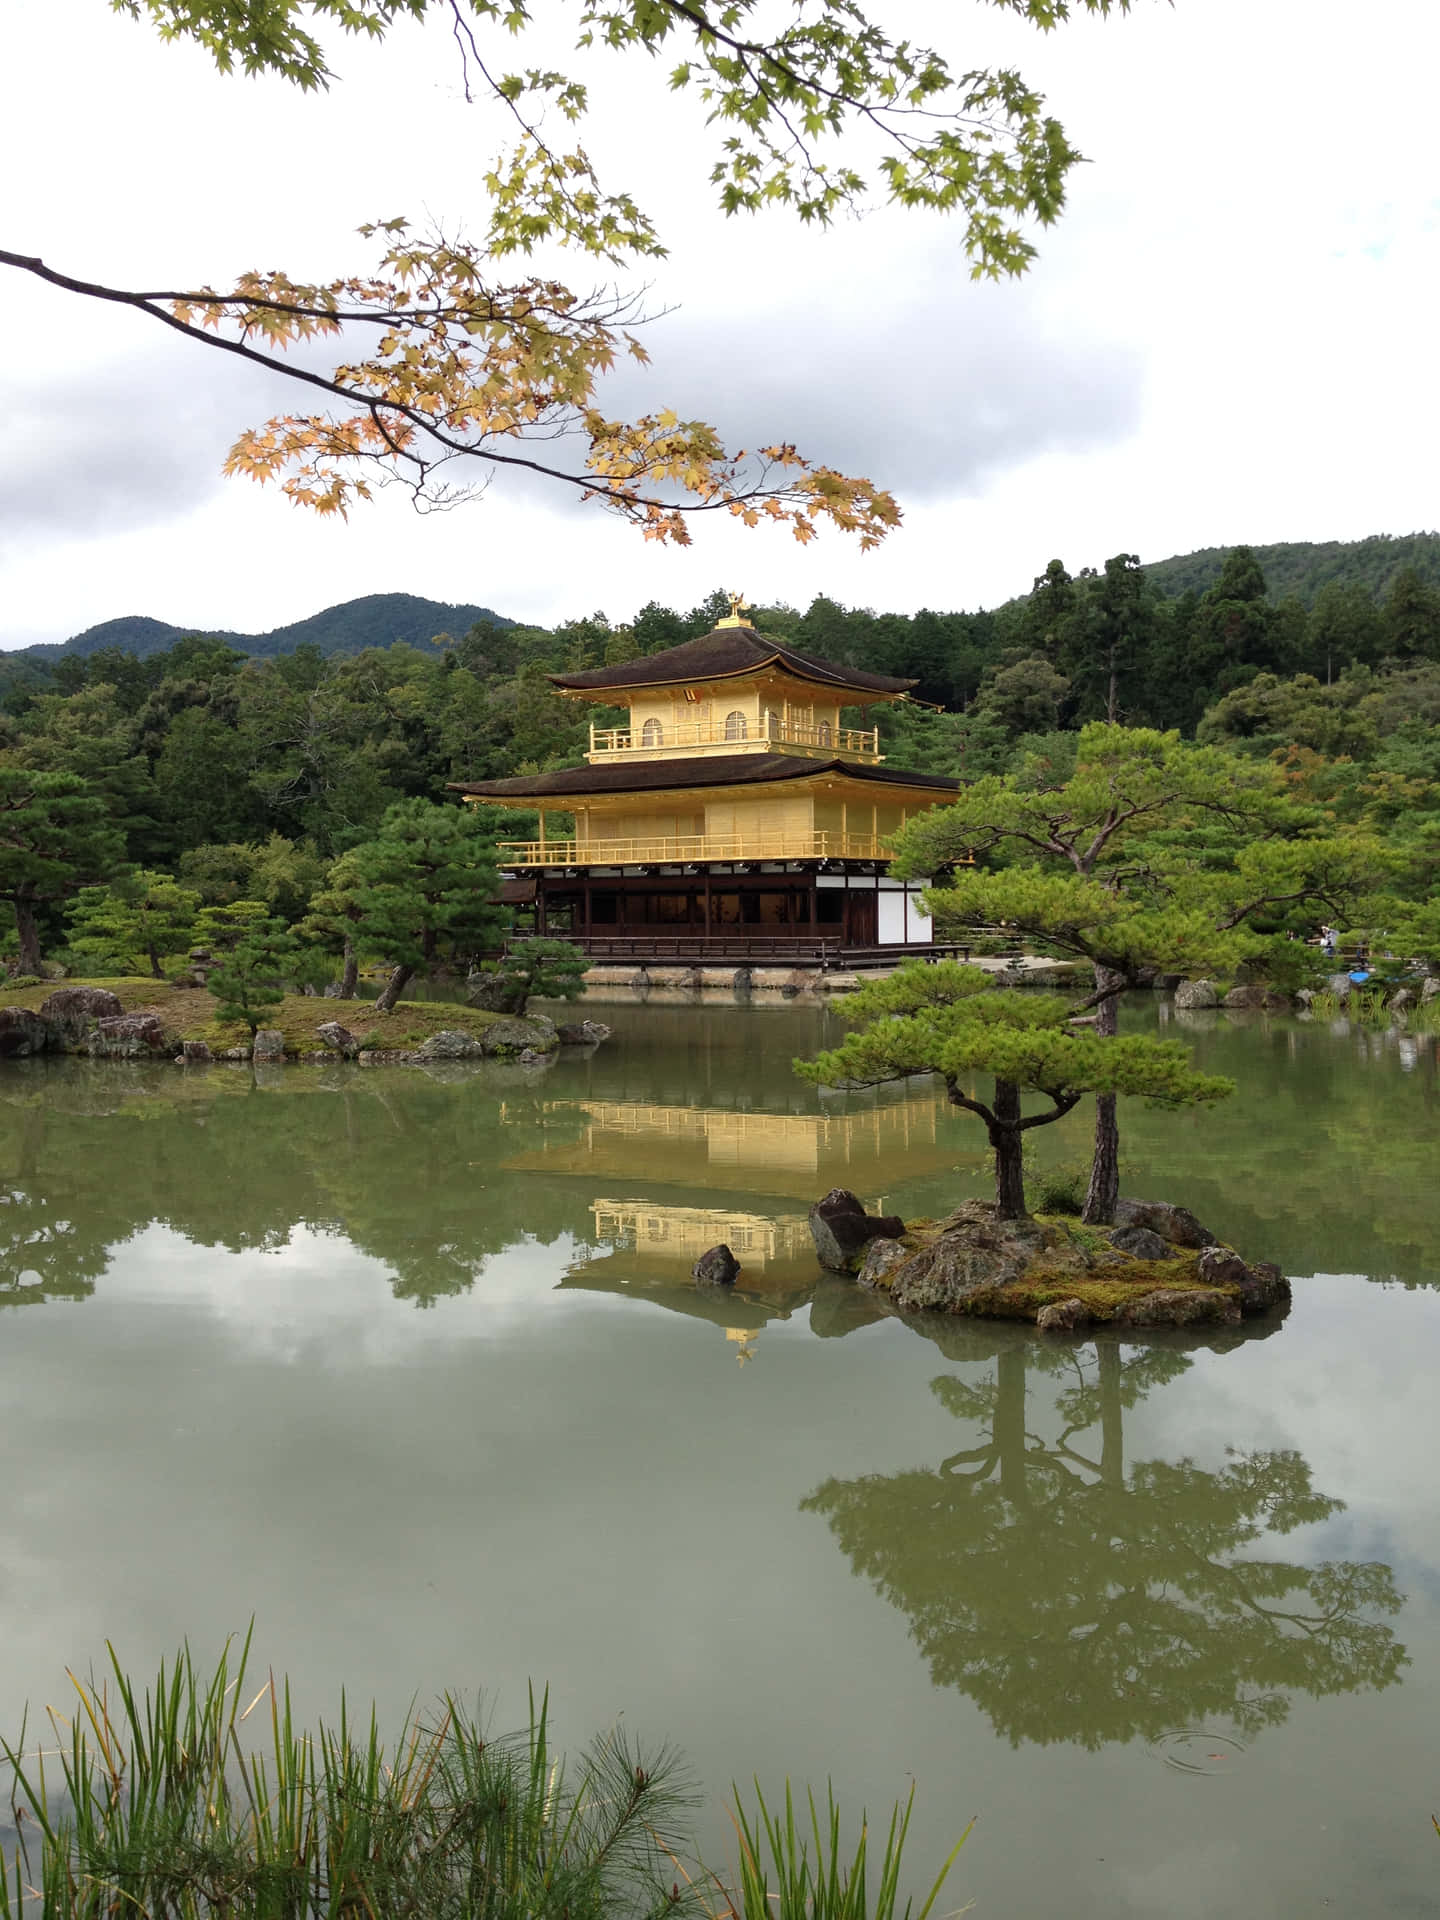 Eintraditioneller Japanischer Tempel In Einer Lebendigen Grünen Landschaft